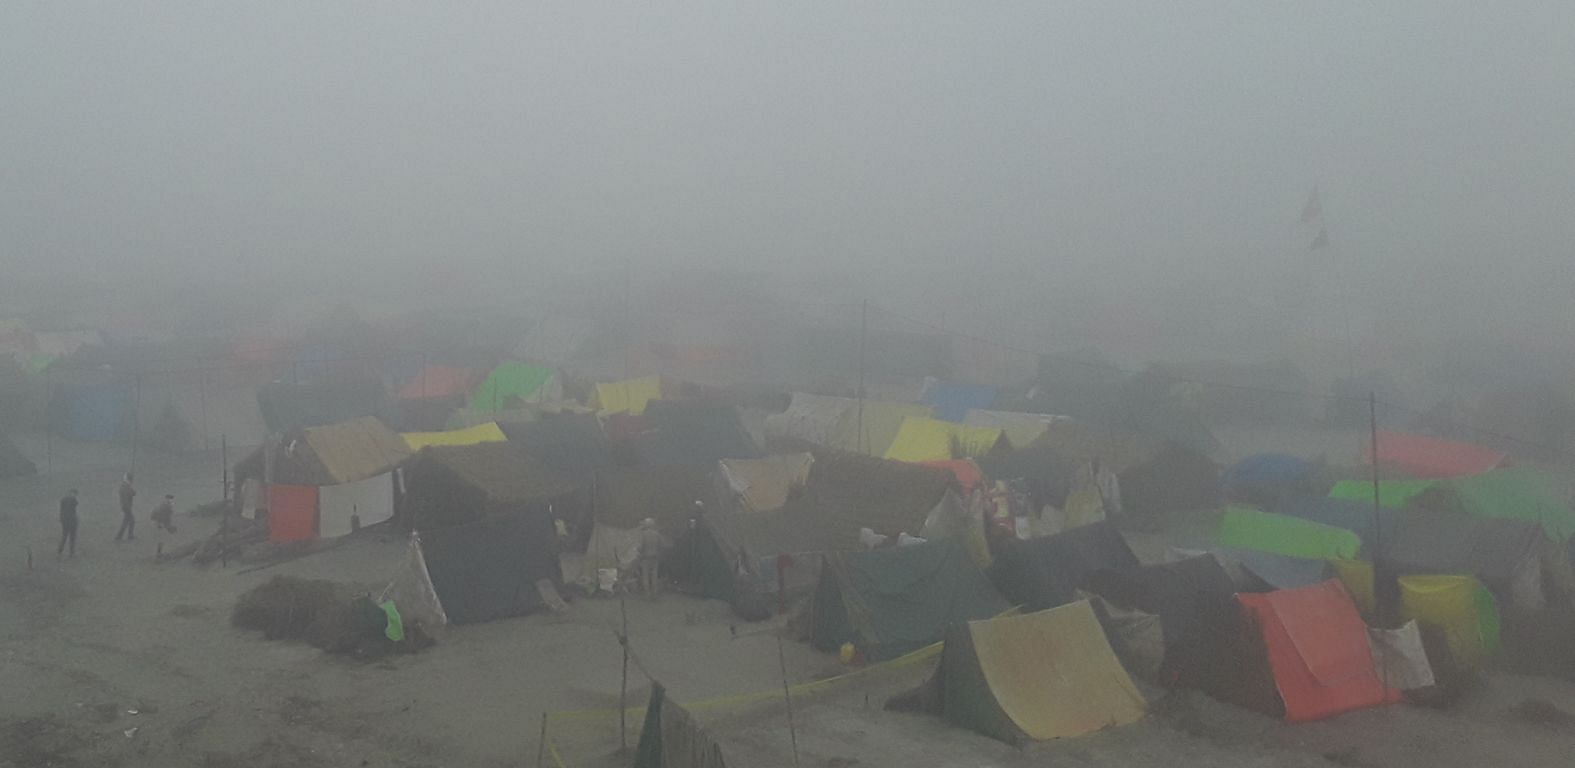 Kota tenda Kalpavas menetap di Ramnagariya yang adil yang terletak di Panchal Ghat, tertutup kabut tebal.  percakapan